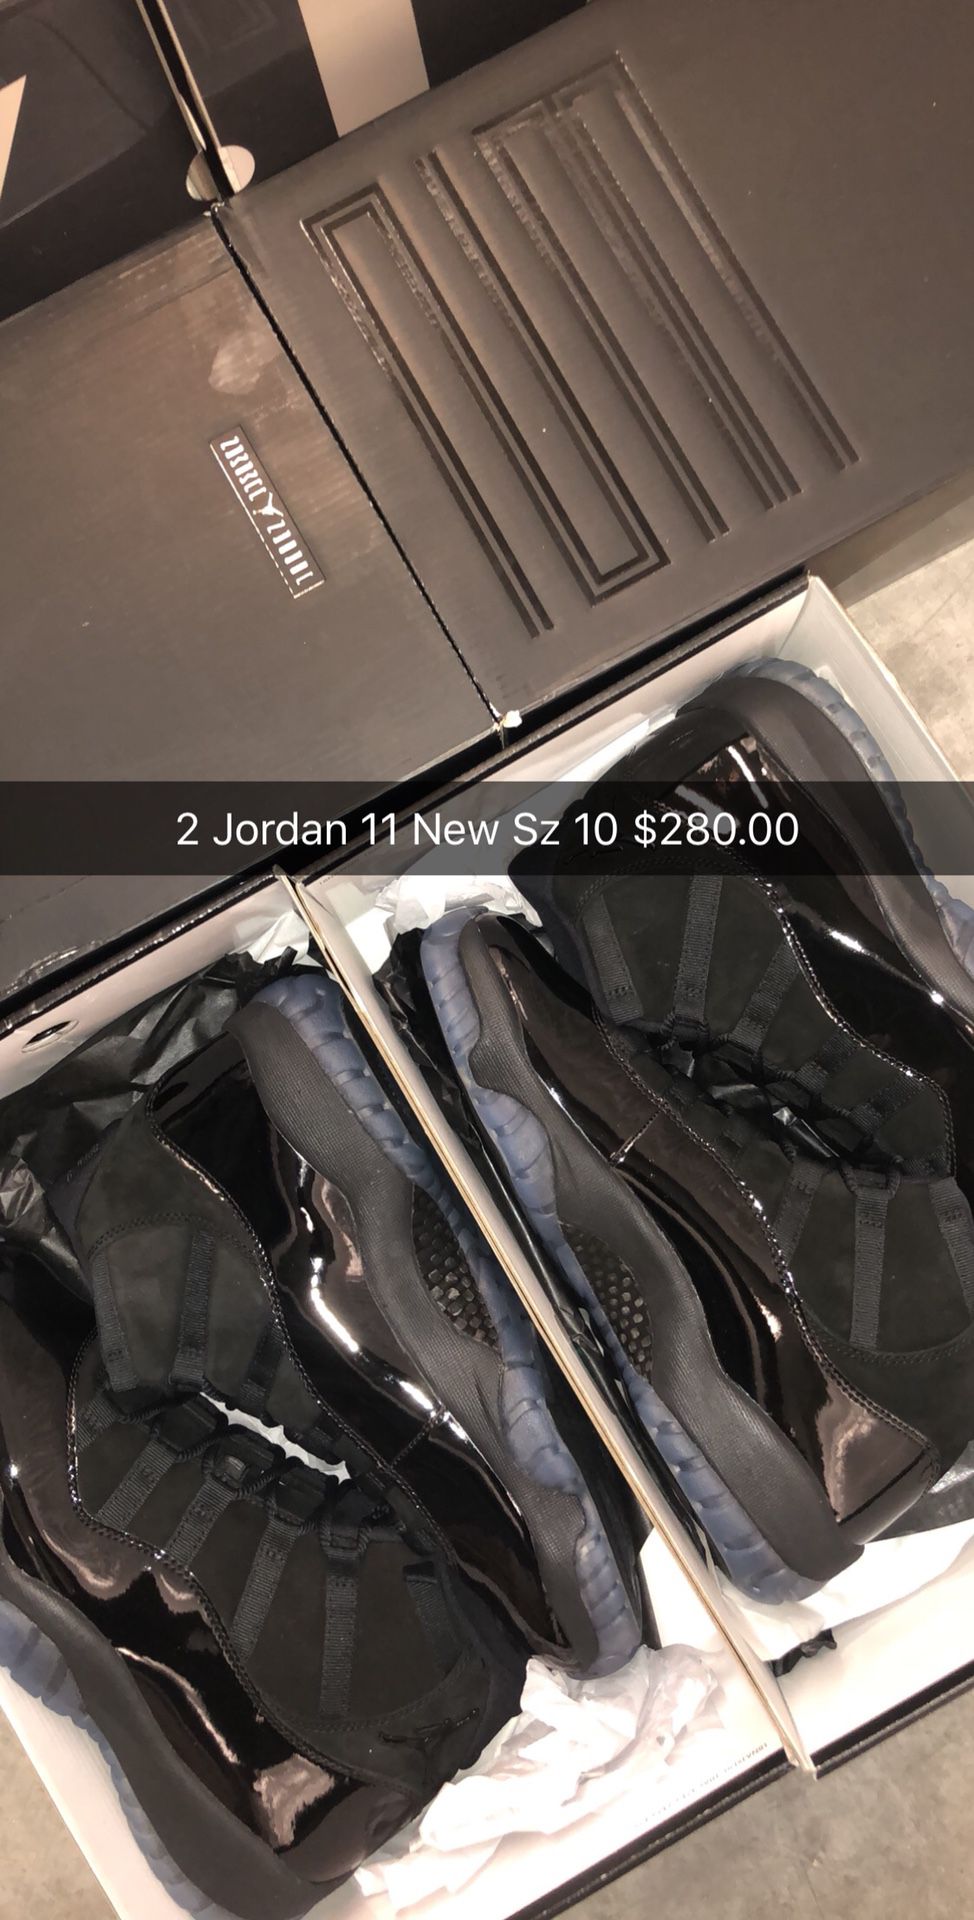 Jordan 11 New Sz 10 2 Pairs